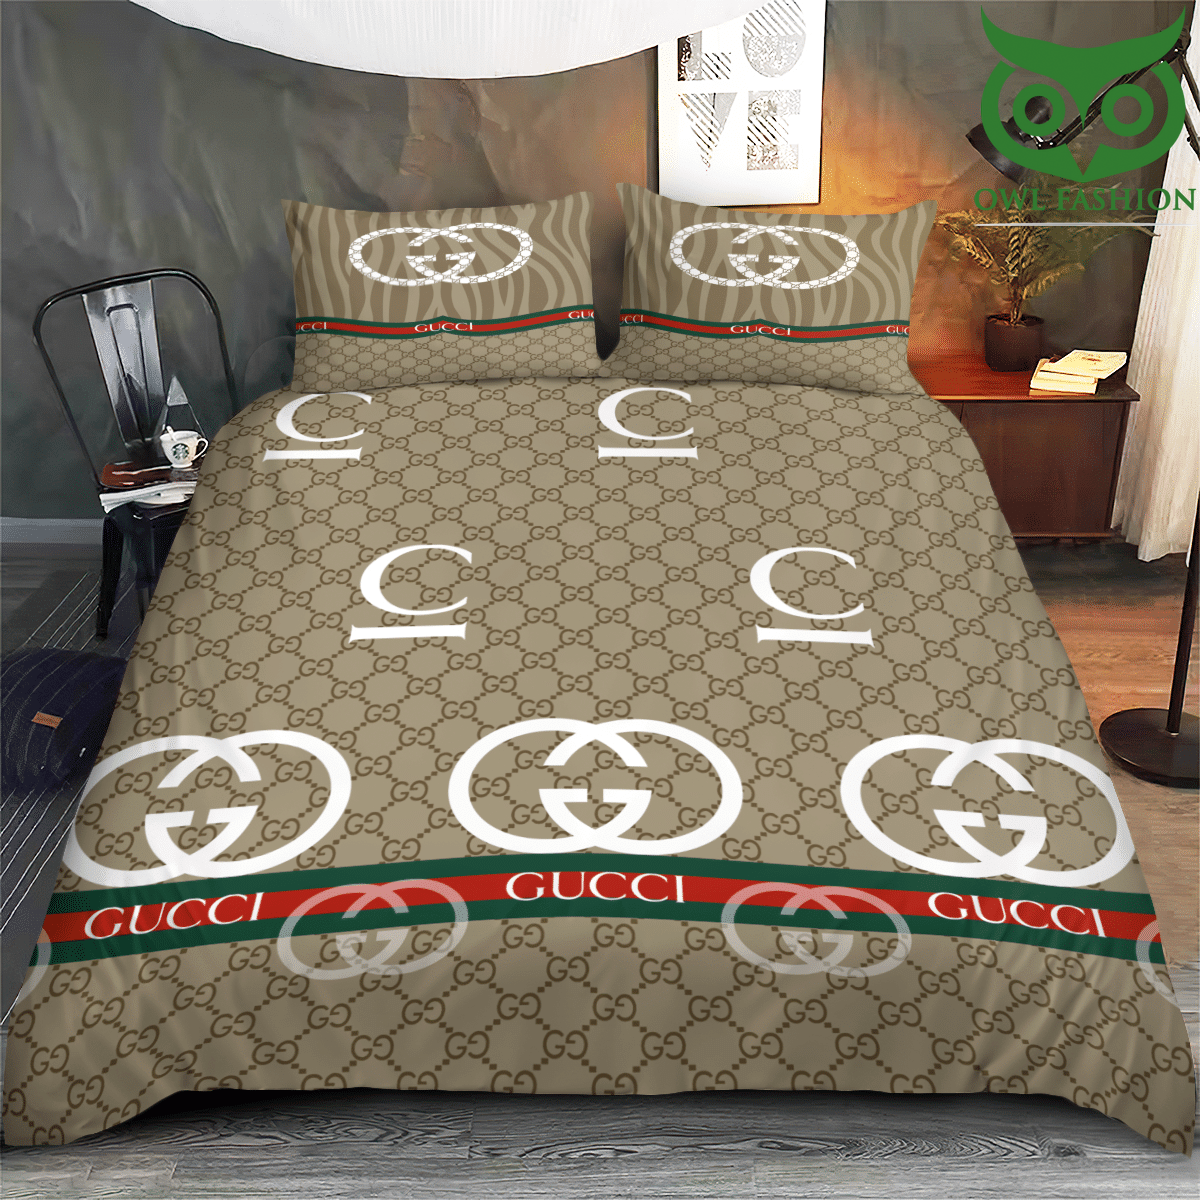 41 LUXURY Gucci basic tone bedding set